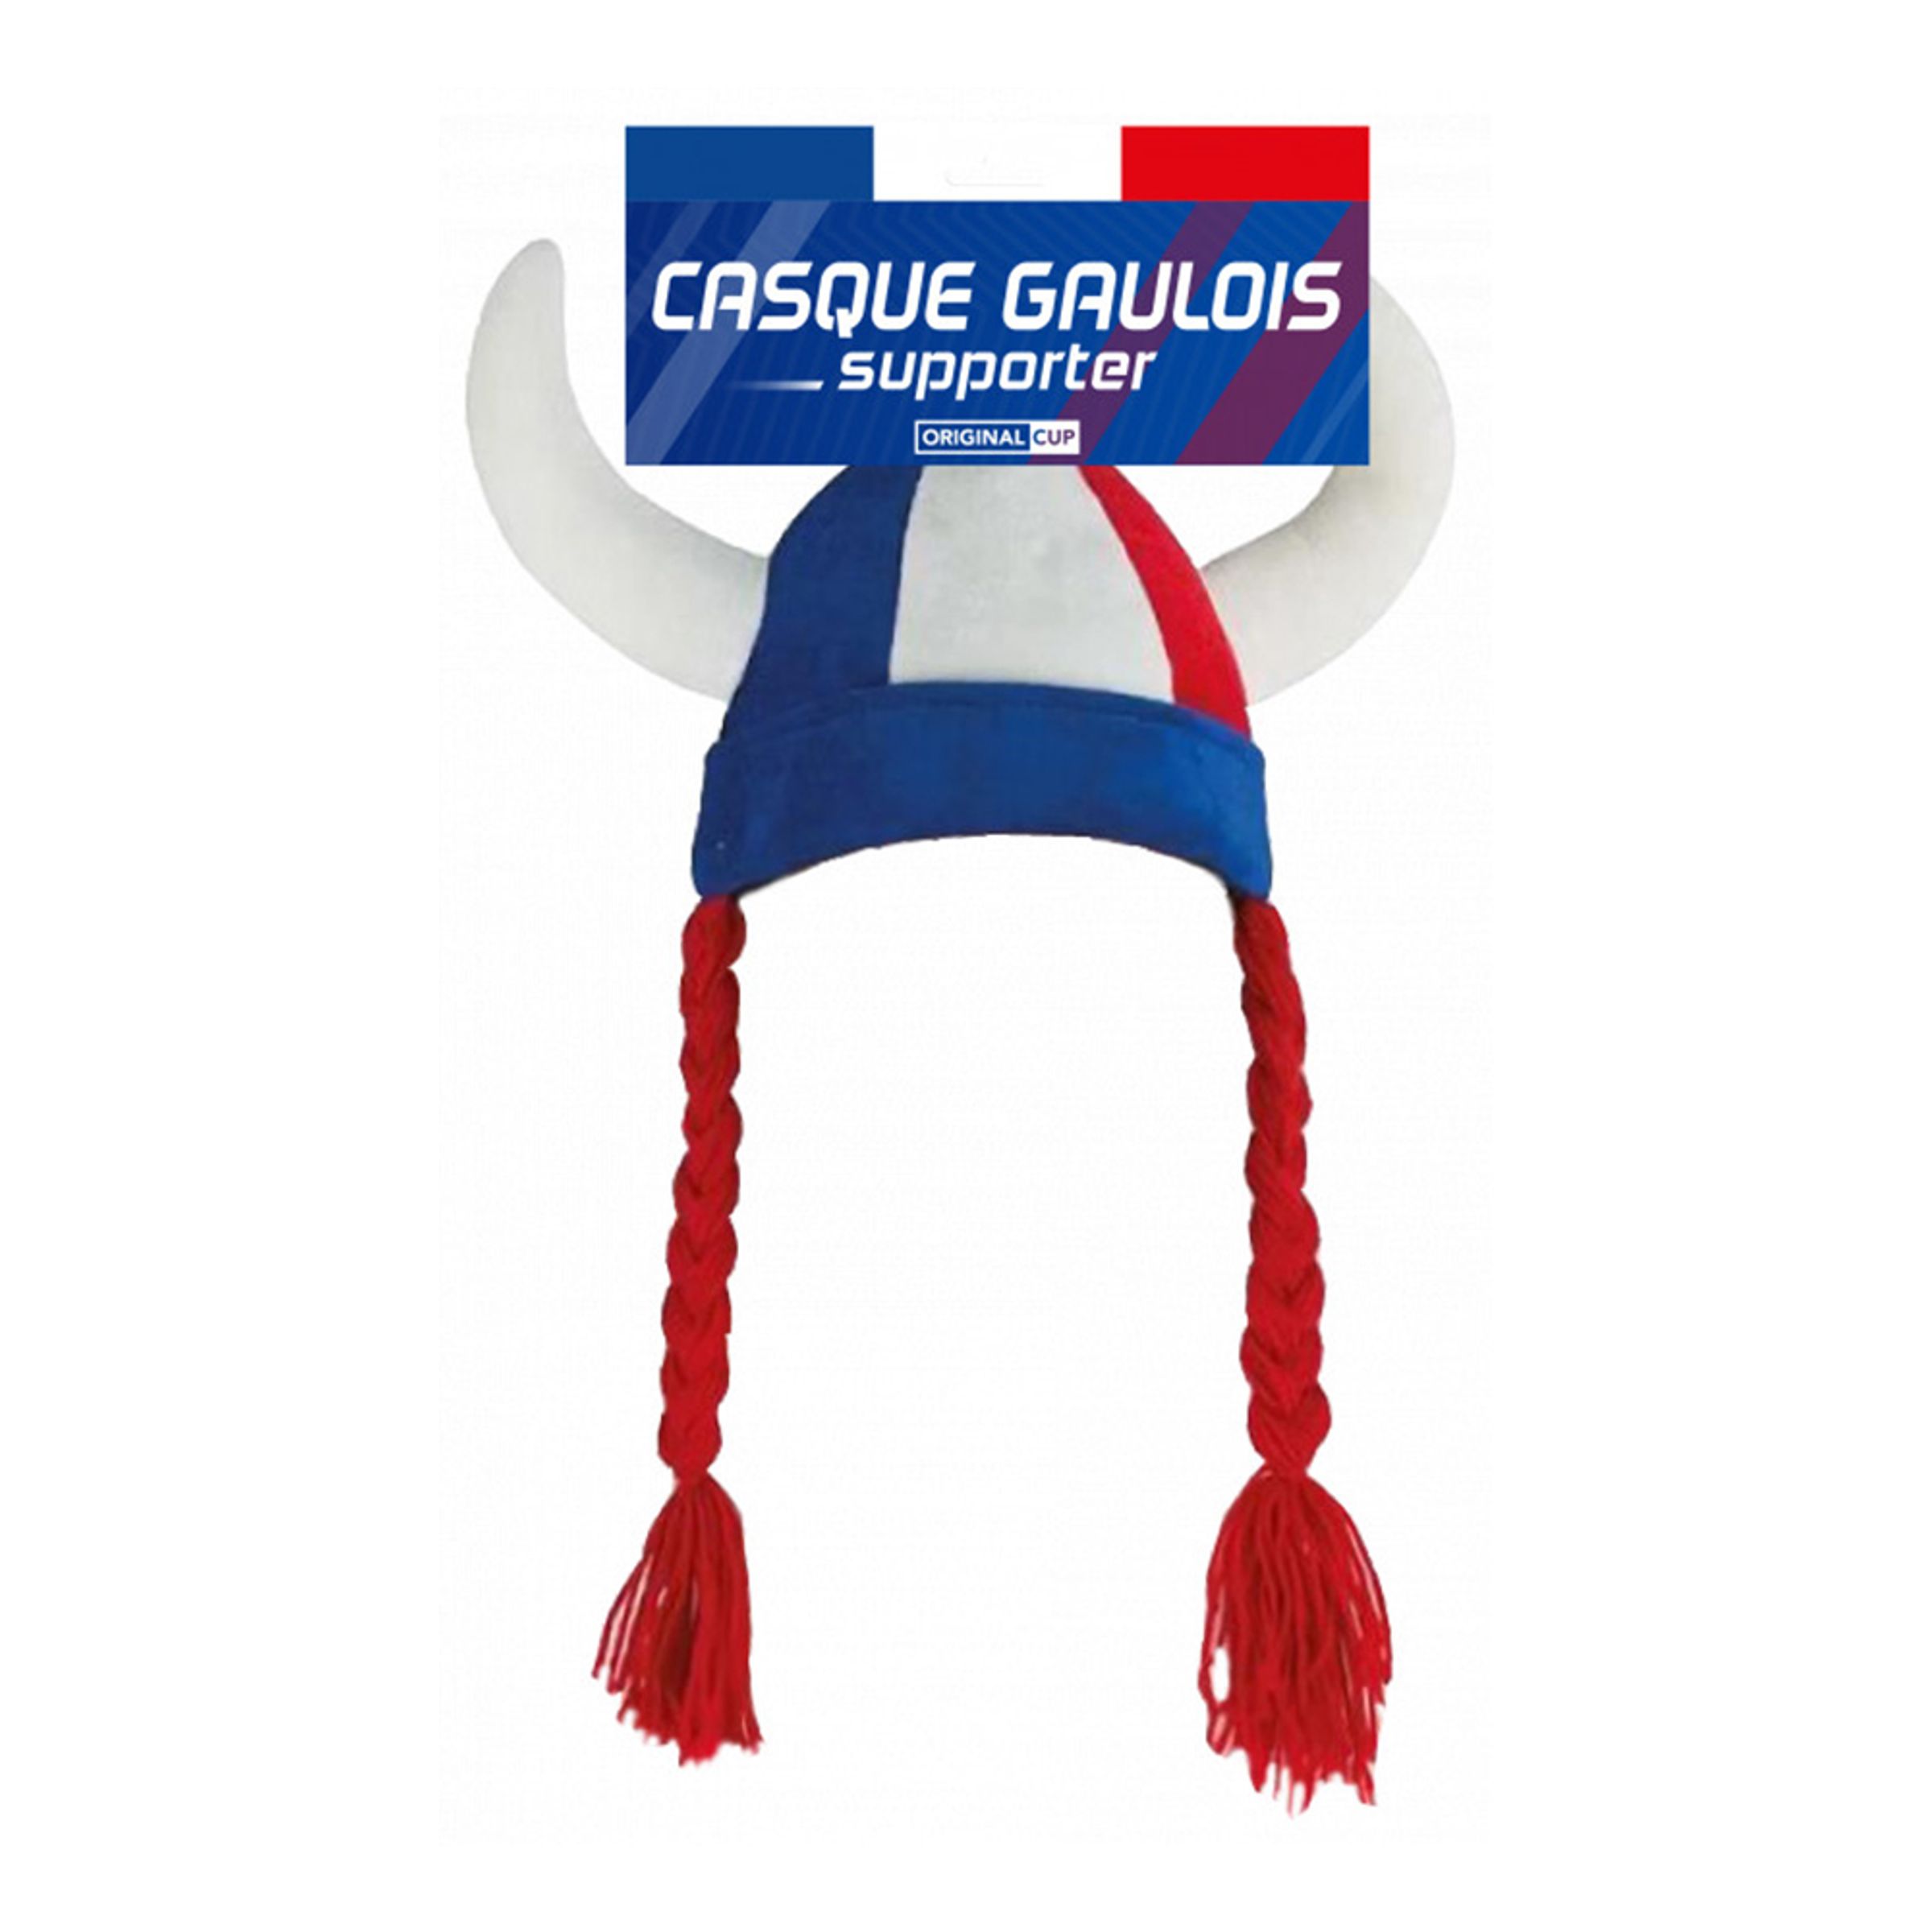 Casque Gaulois Supporter Hatt